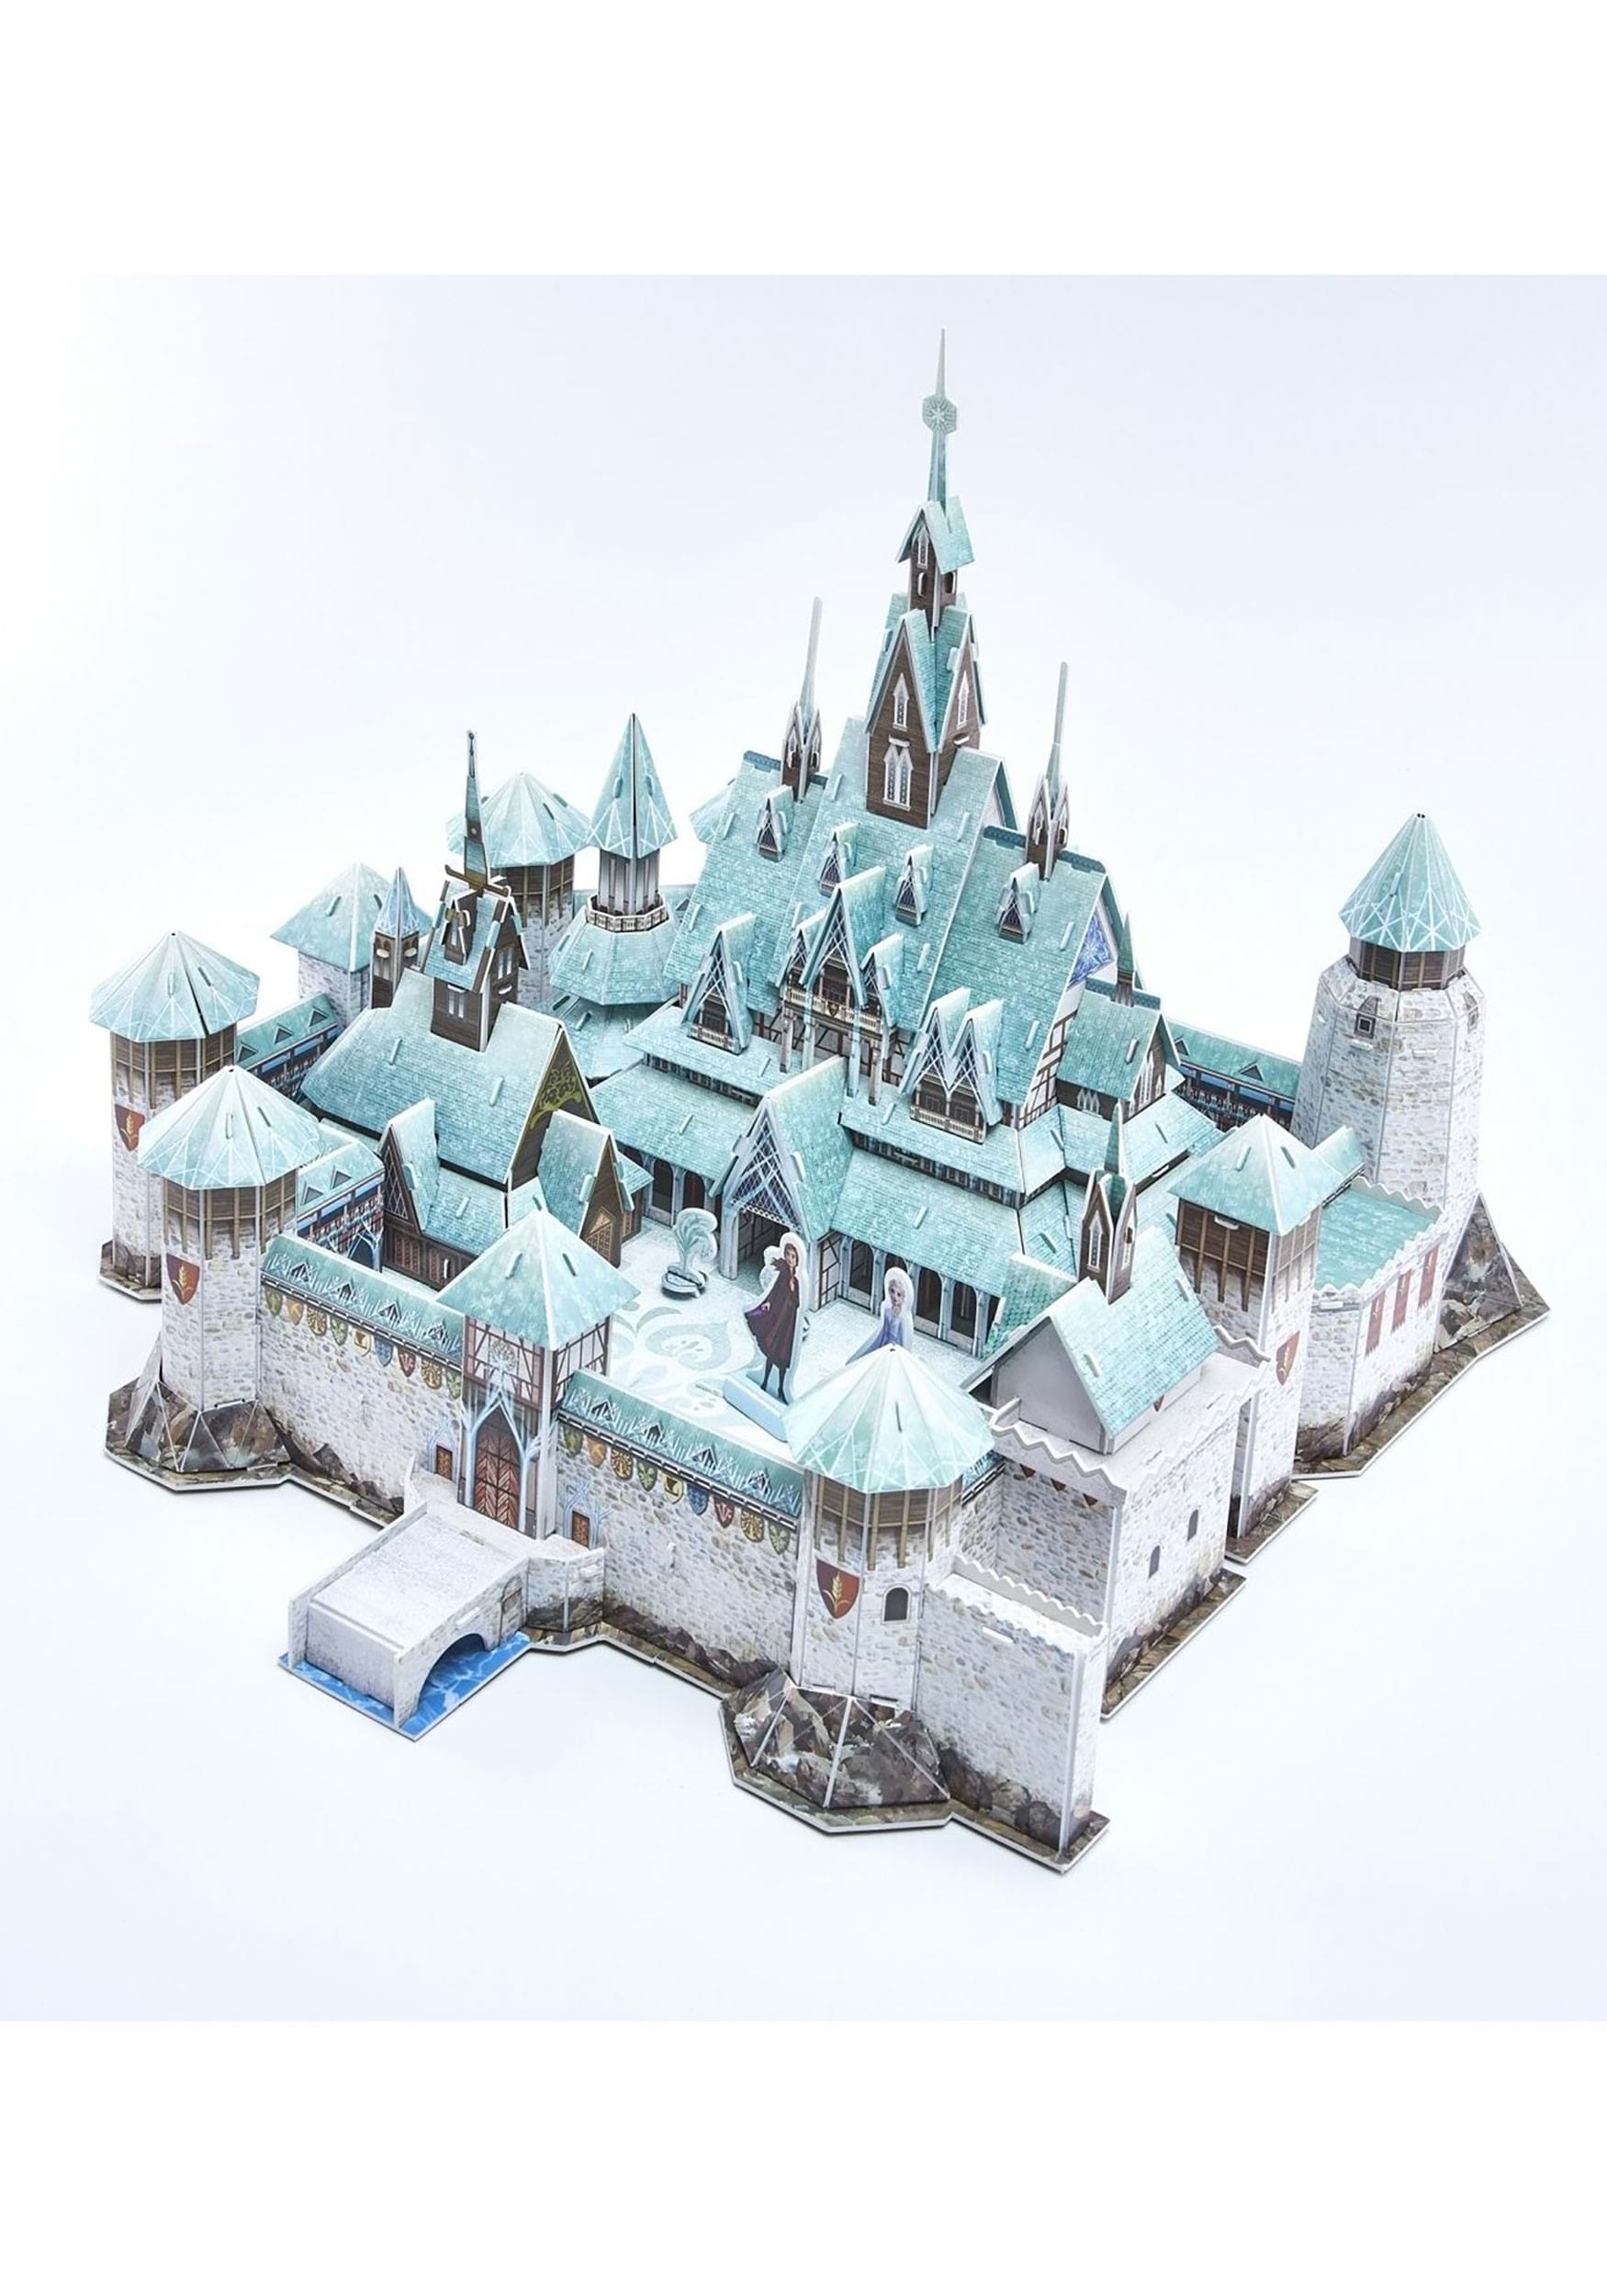 Disney Frozen 3D Arendelle Castle Puzzle